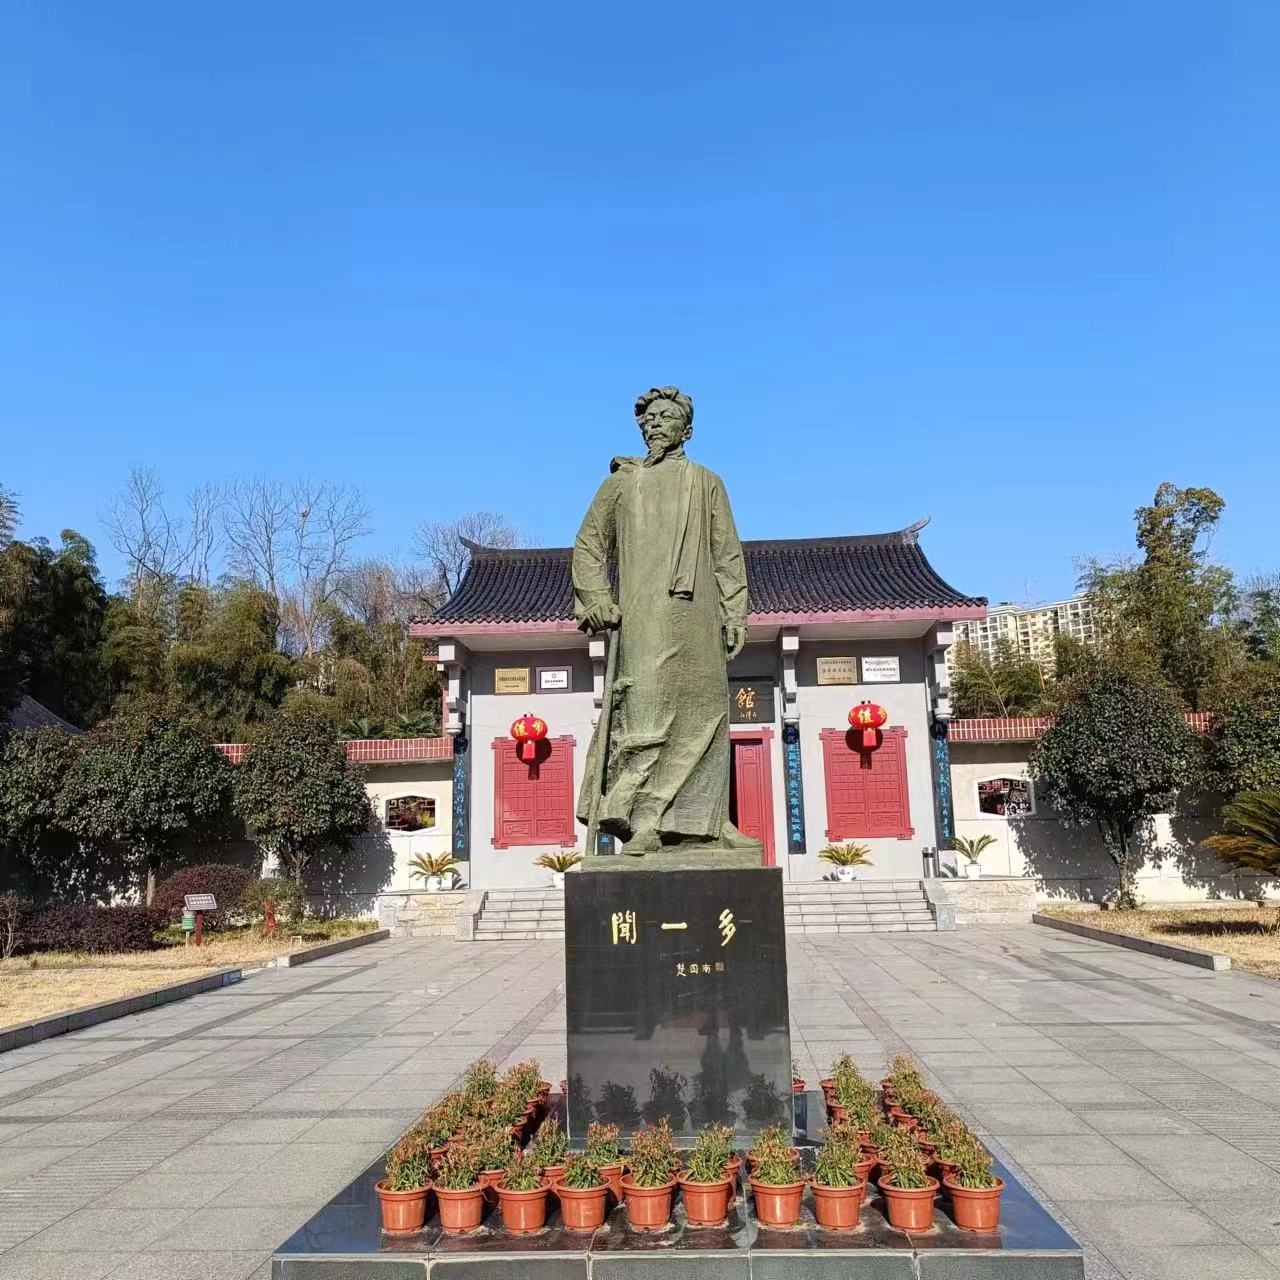 闻一多纪念馆位于湖北黄冈市浠水县，占地面积11000平方米，三栋平房和一个庭院，馆藏文物均系现代文物